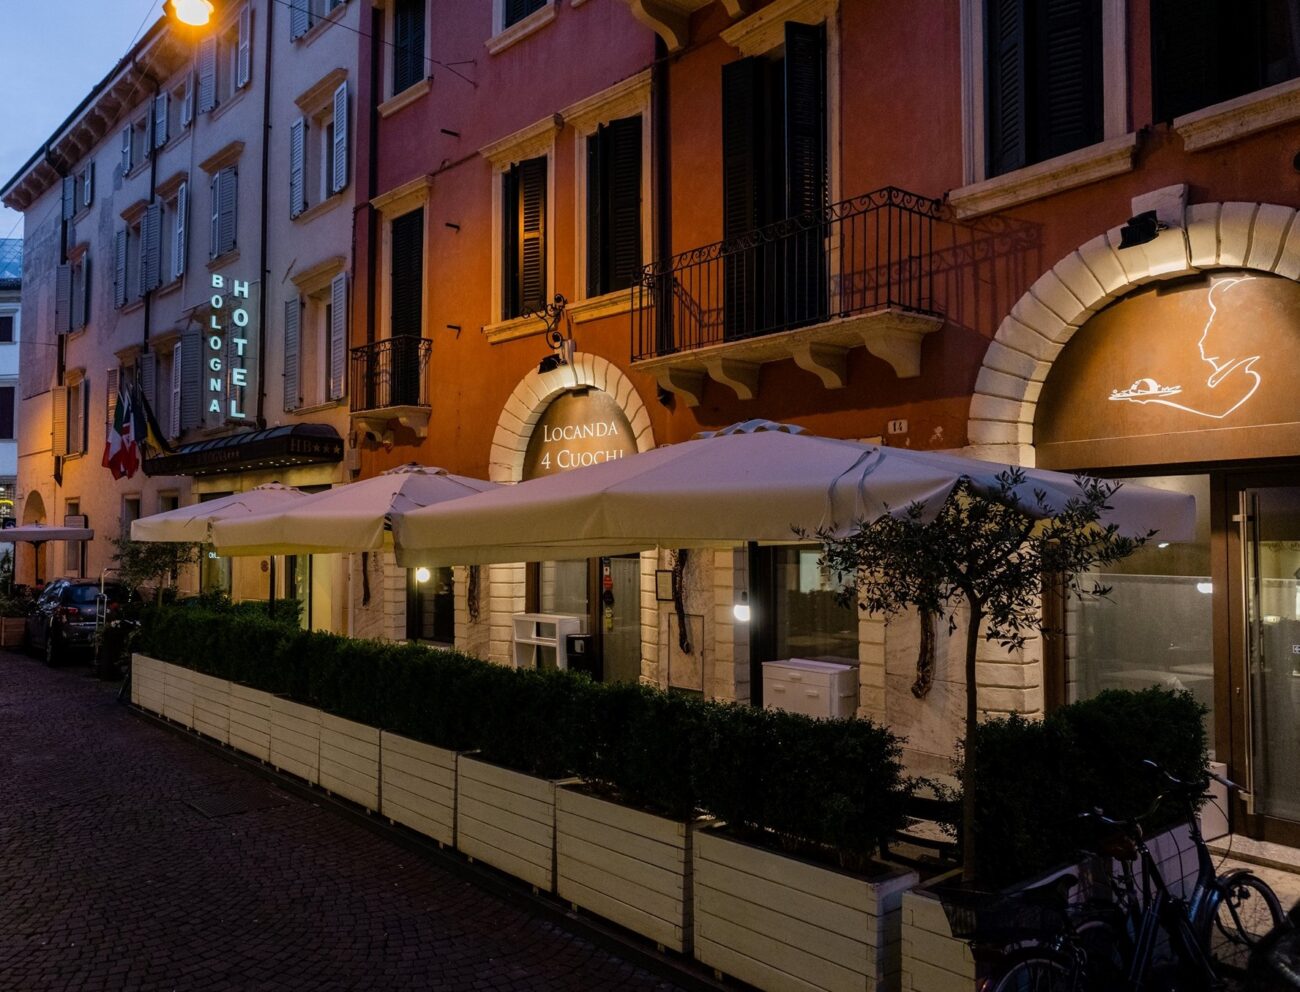 dove mangiare verona locanda 4 cuochi vigneto urbano di Verona 14 cantine della Valpolicella a portata di bicicletta